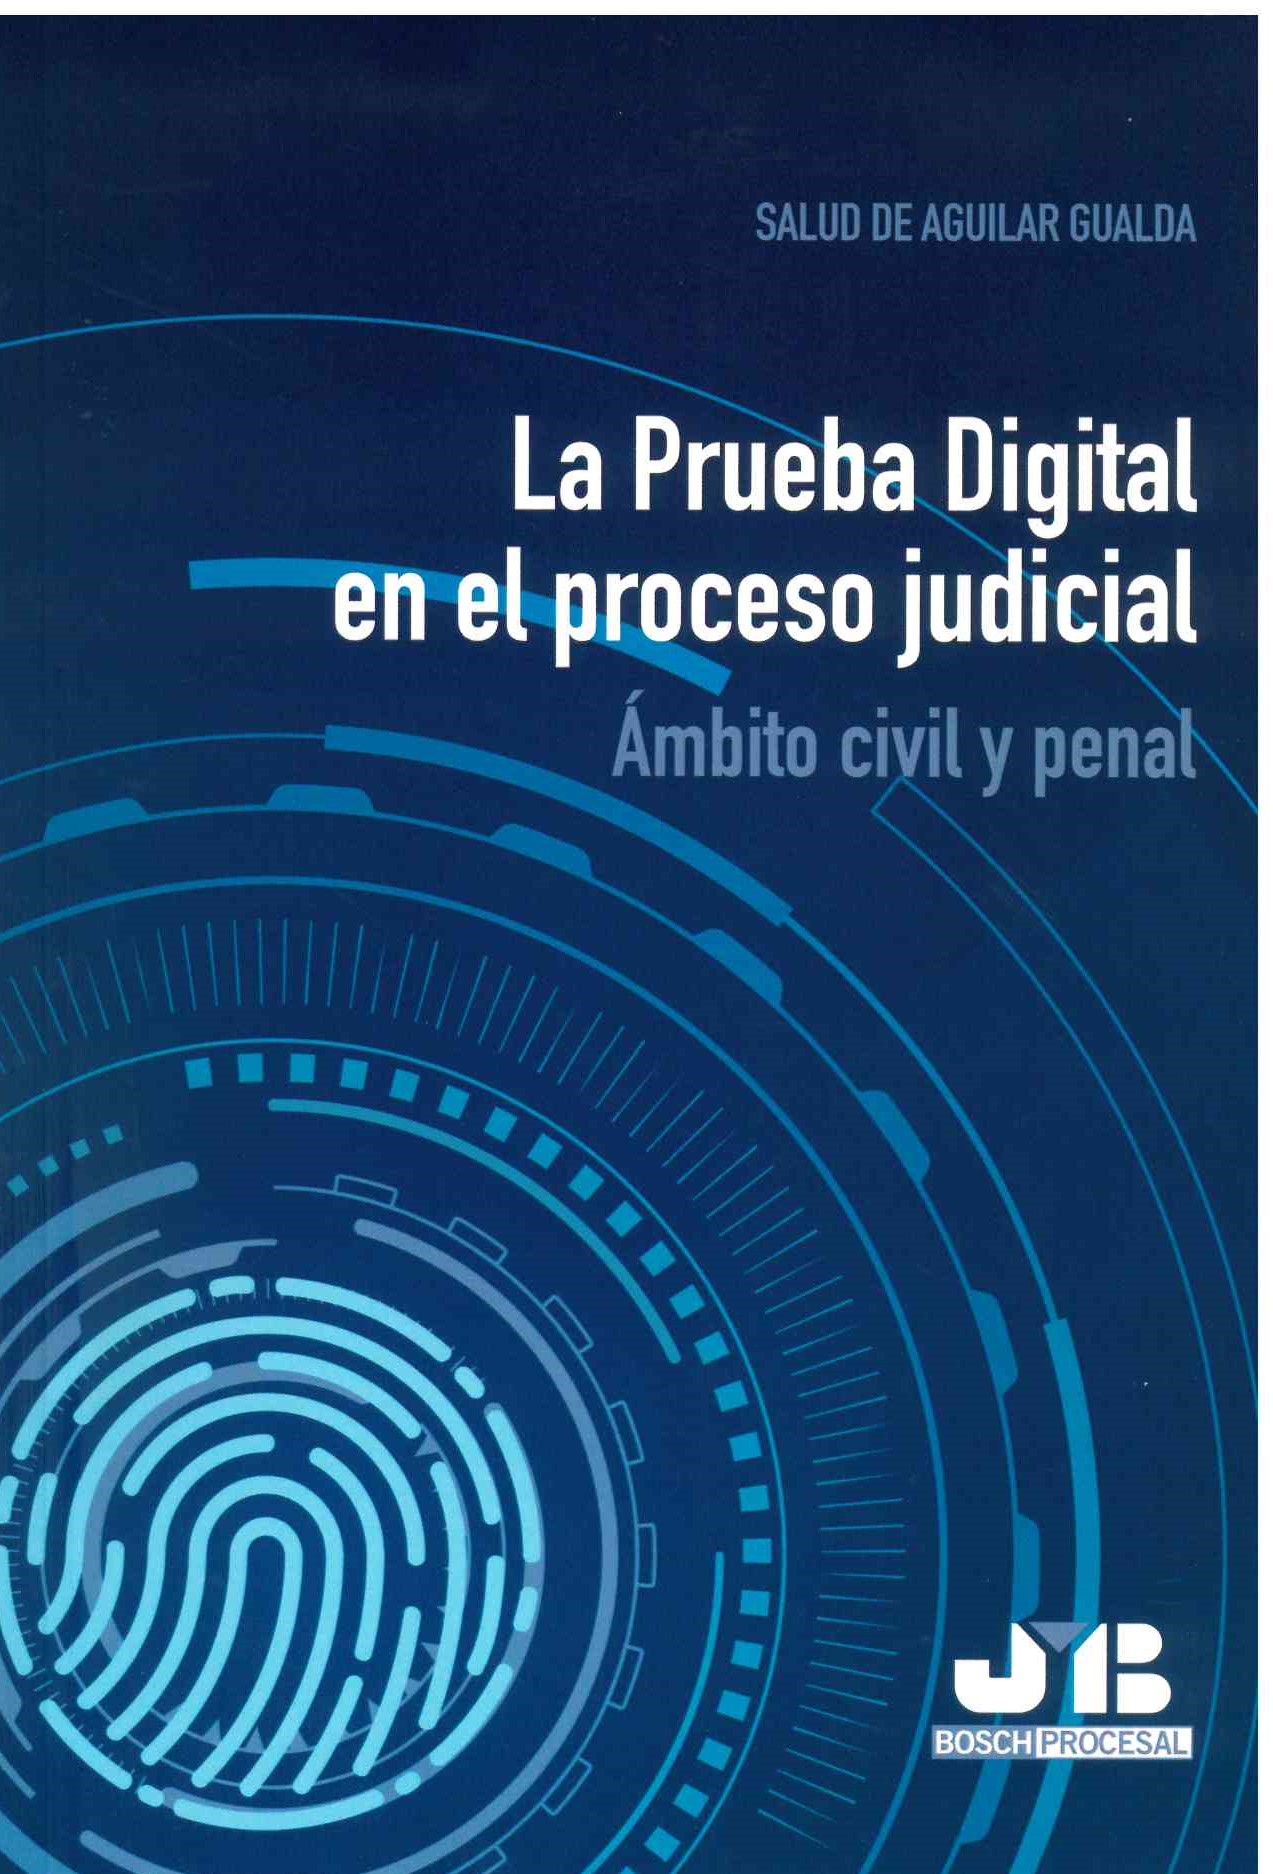 La prueba digital en el proceso judicial.